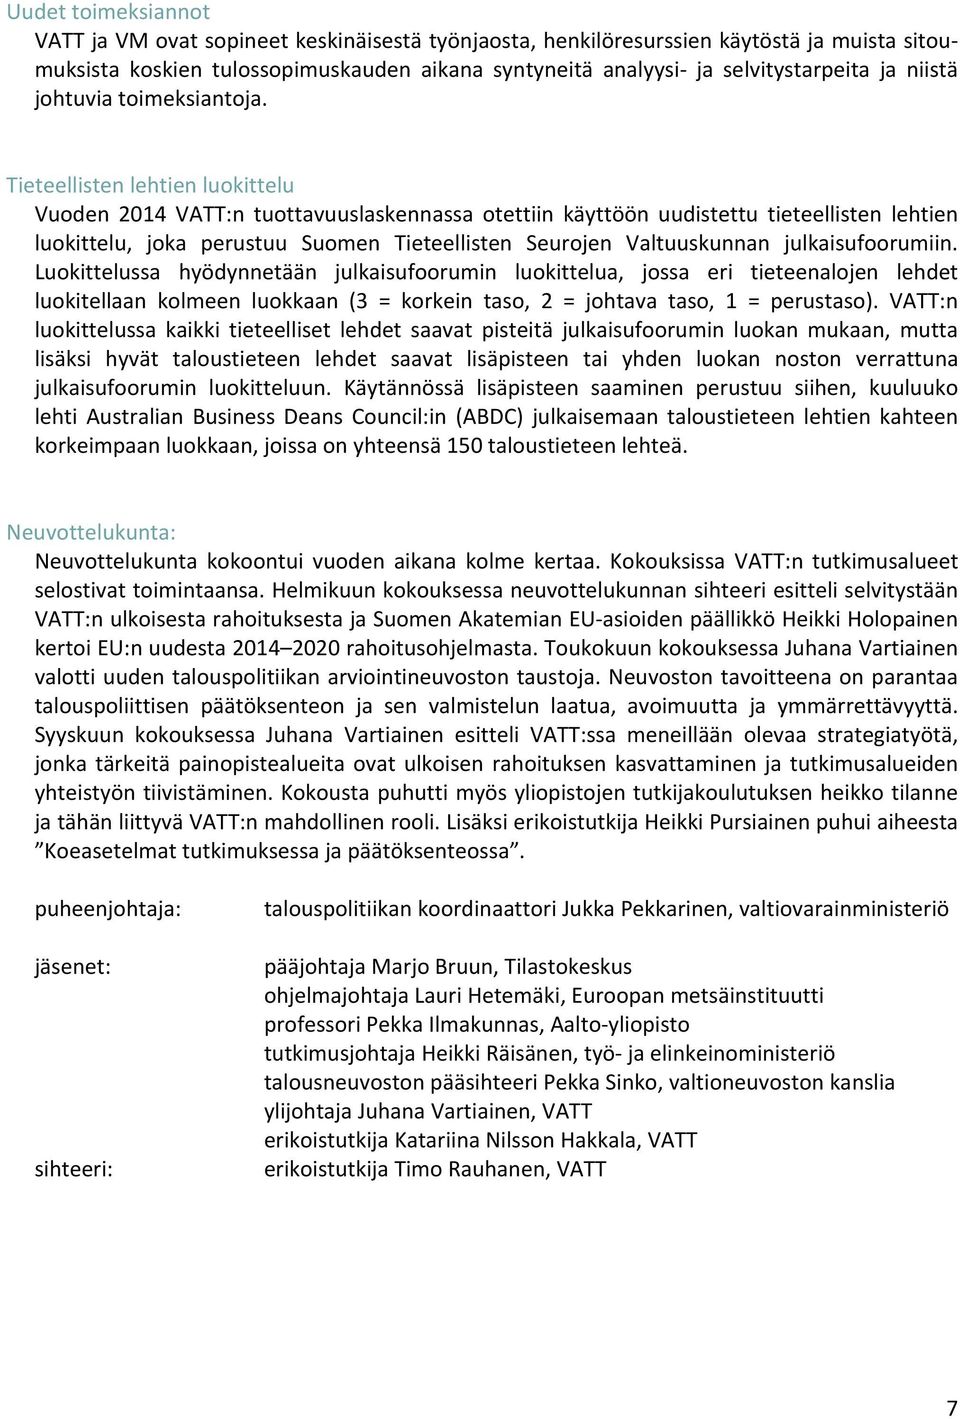 Tieteellisten lehtien luokittelu Vuoden 2014 VATT:n tuottavuuslaskennassa otettiin käyttöön uudistettu tieteellisten lehtien luokittelu, joka perustuu Suomen Tieteellisten Seurojen Valtuuskunnan